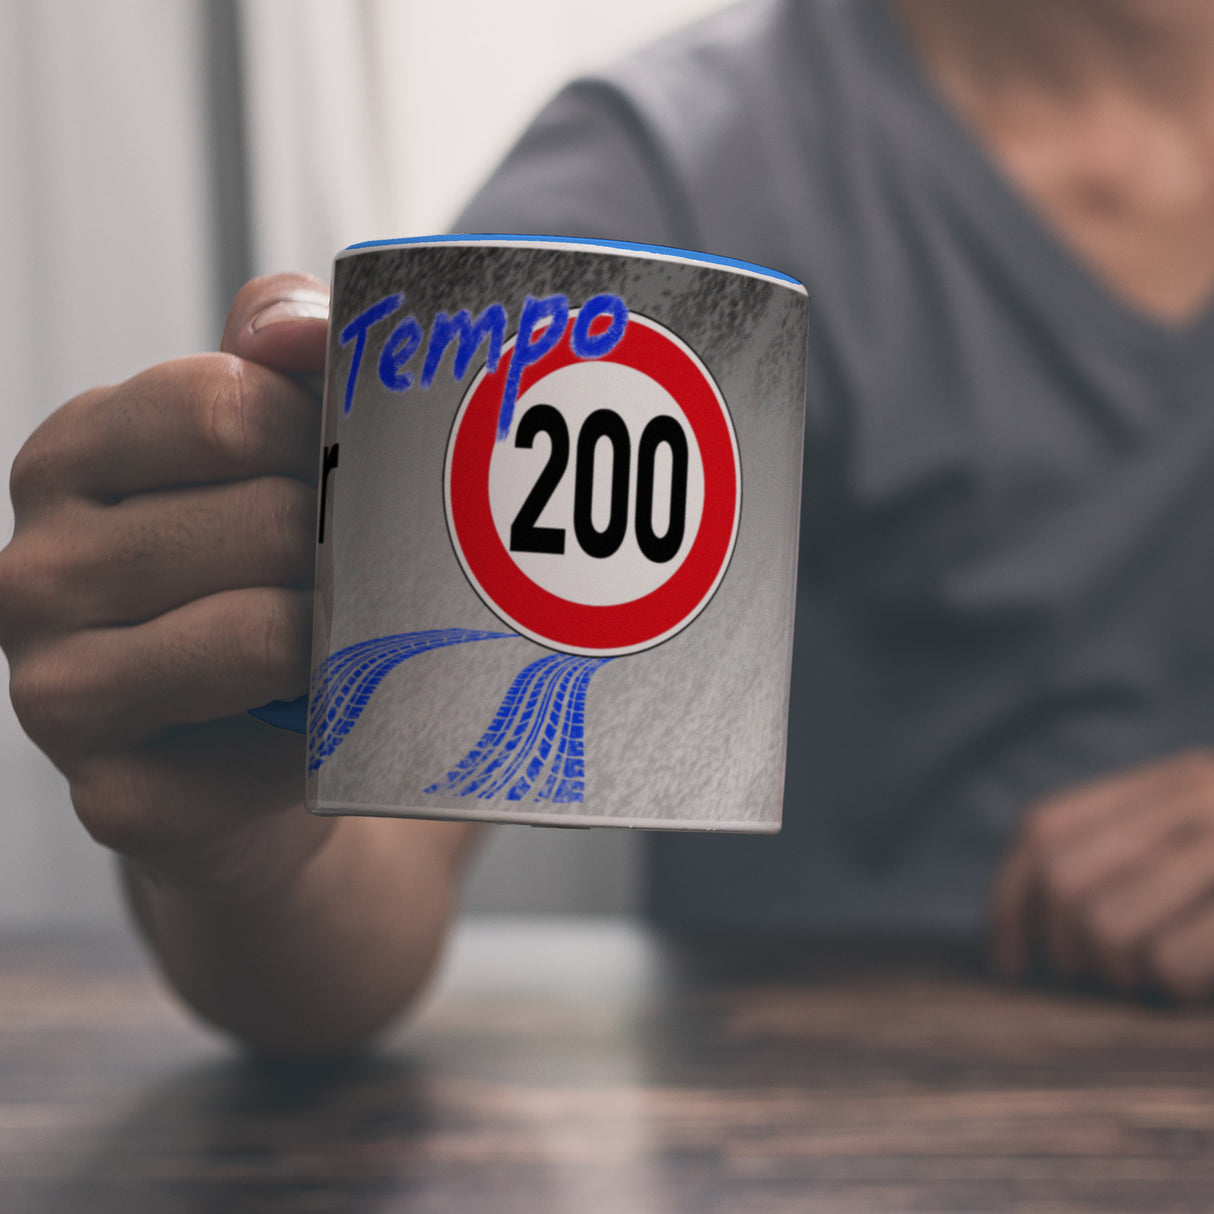 Kaffeebecher gegen Tempolimit - für 200 km/h bei Nässe auf Autobahn